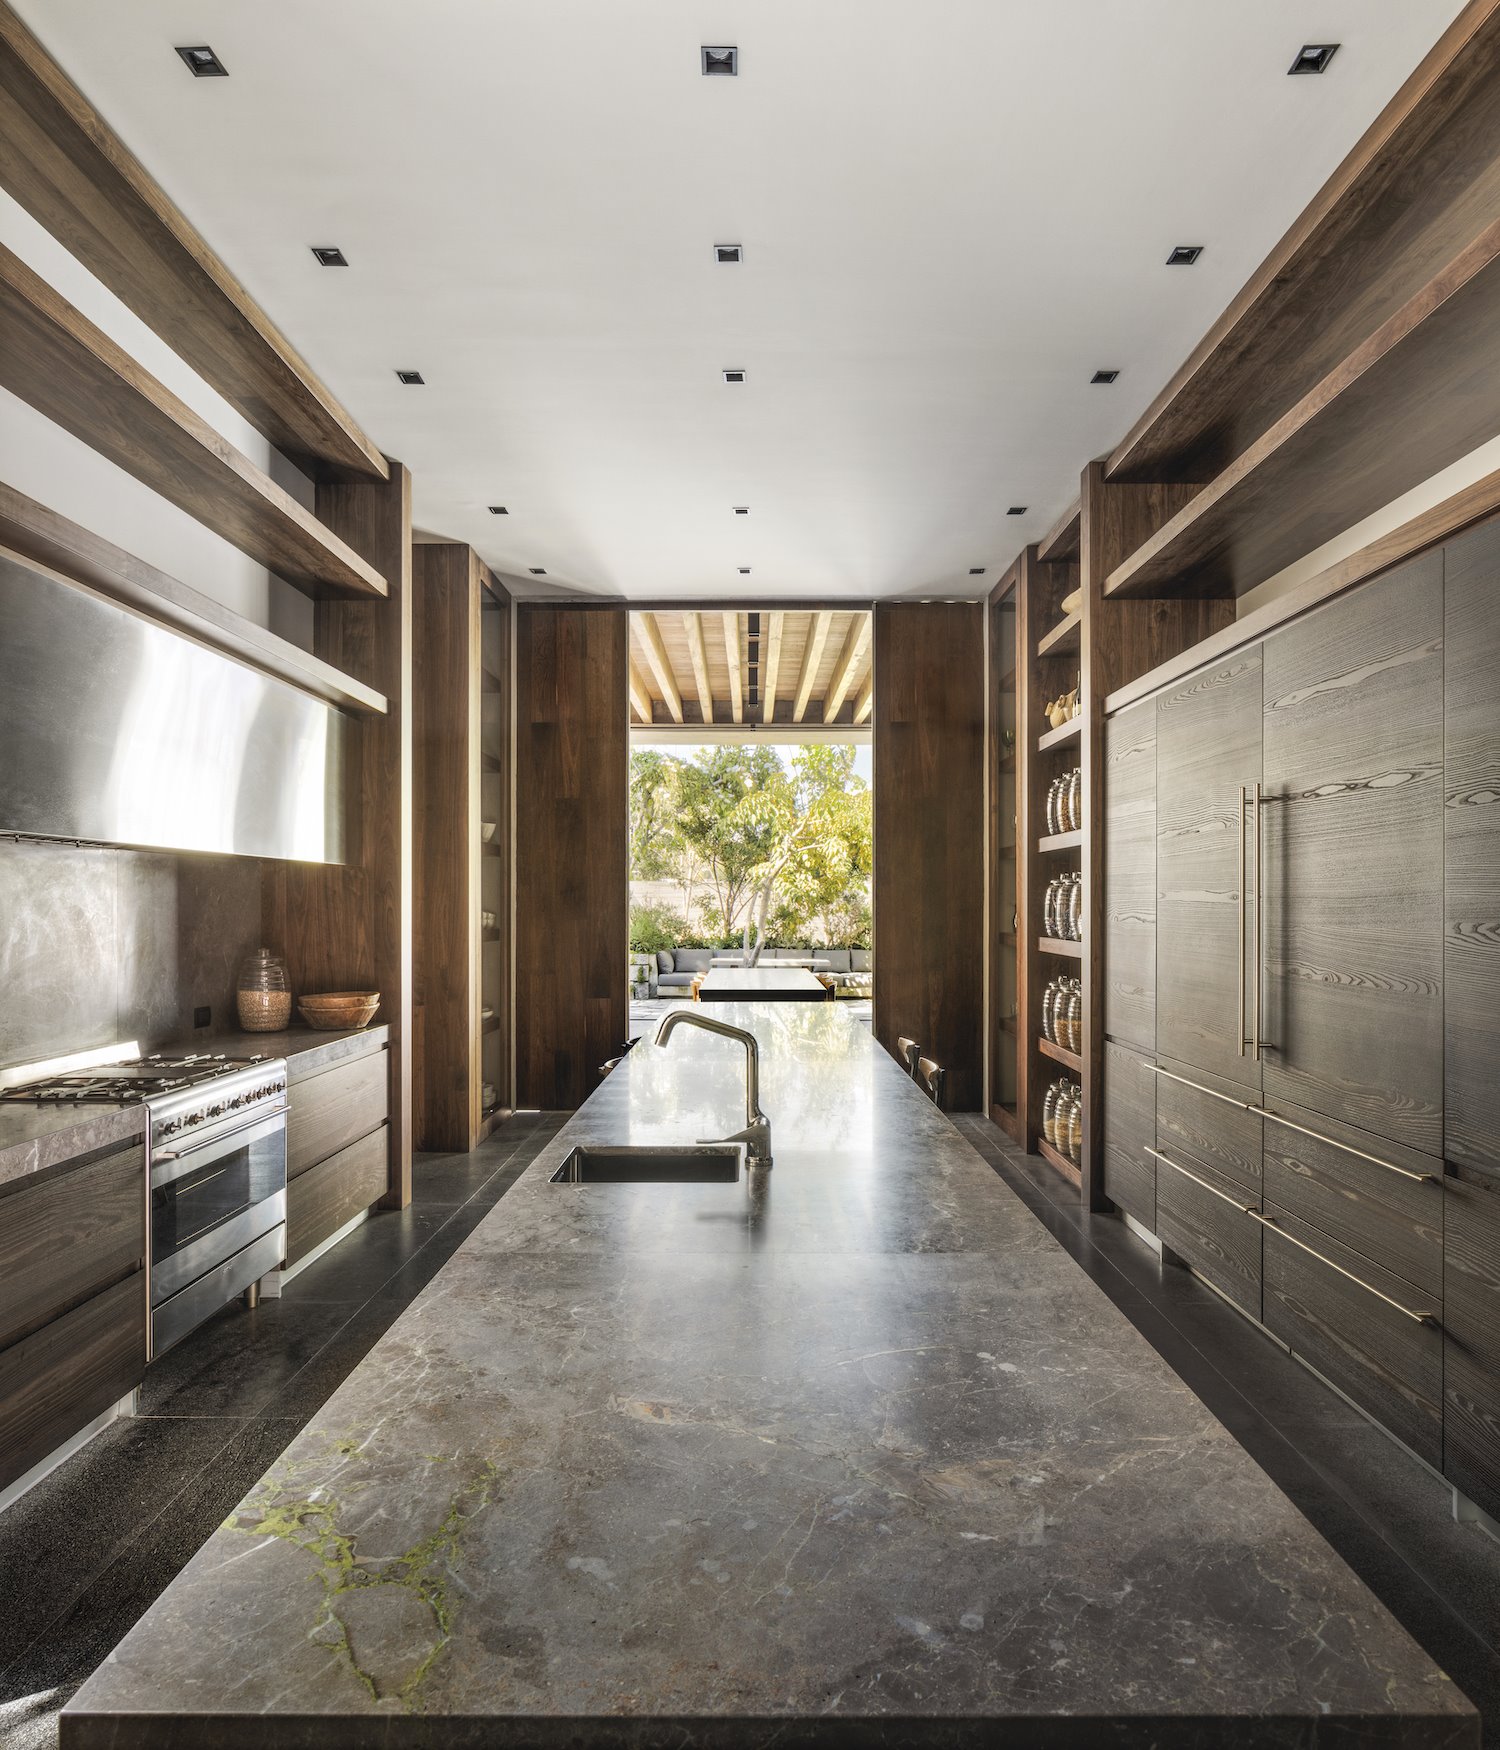 Casa moderna con interiores de madera en Mexico cocina